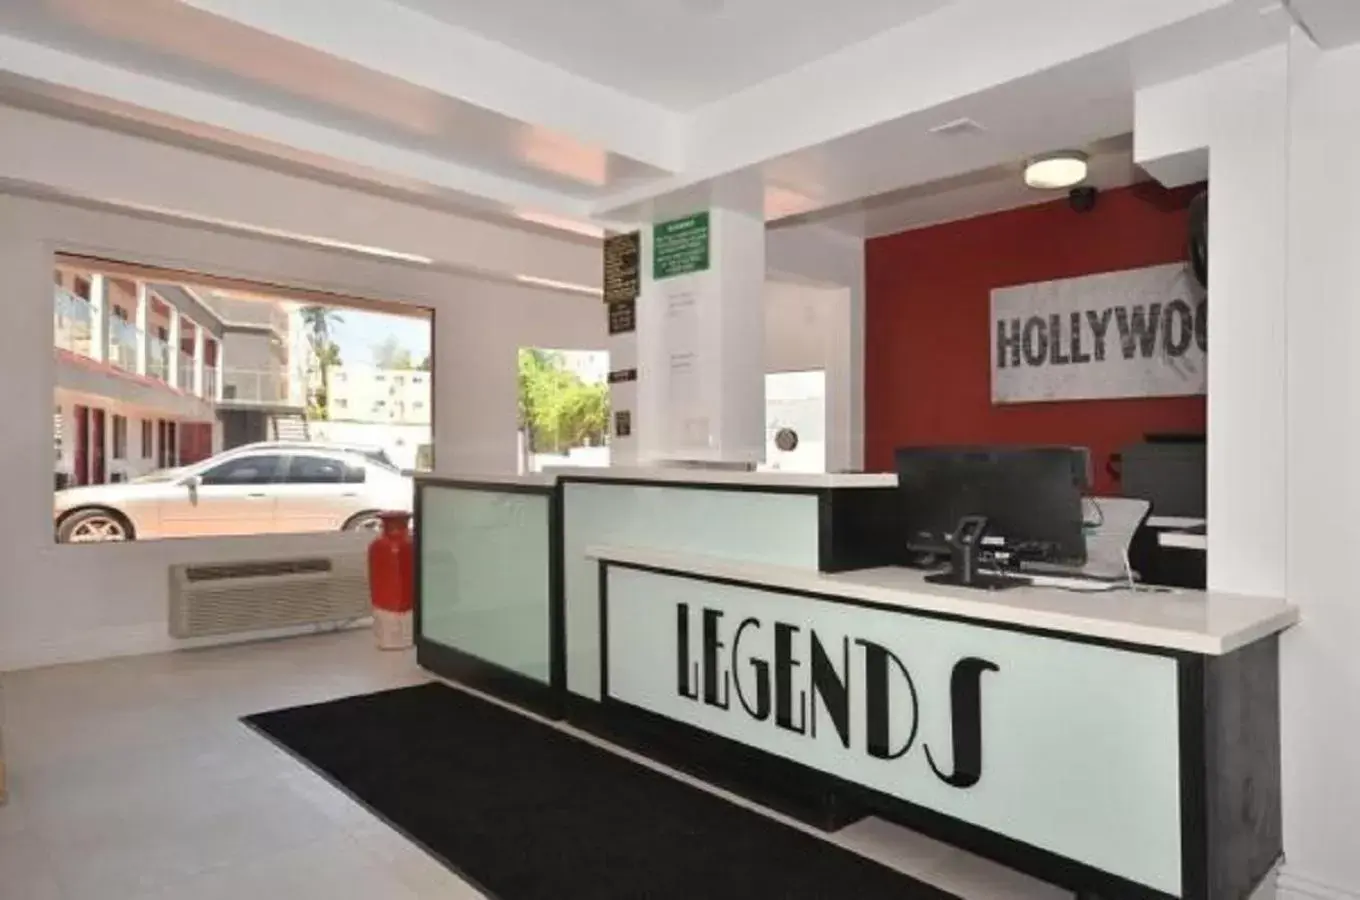 Lobby/Reception in Legend Hotel Hollywood